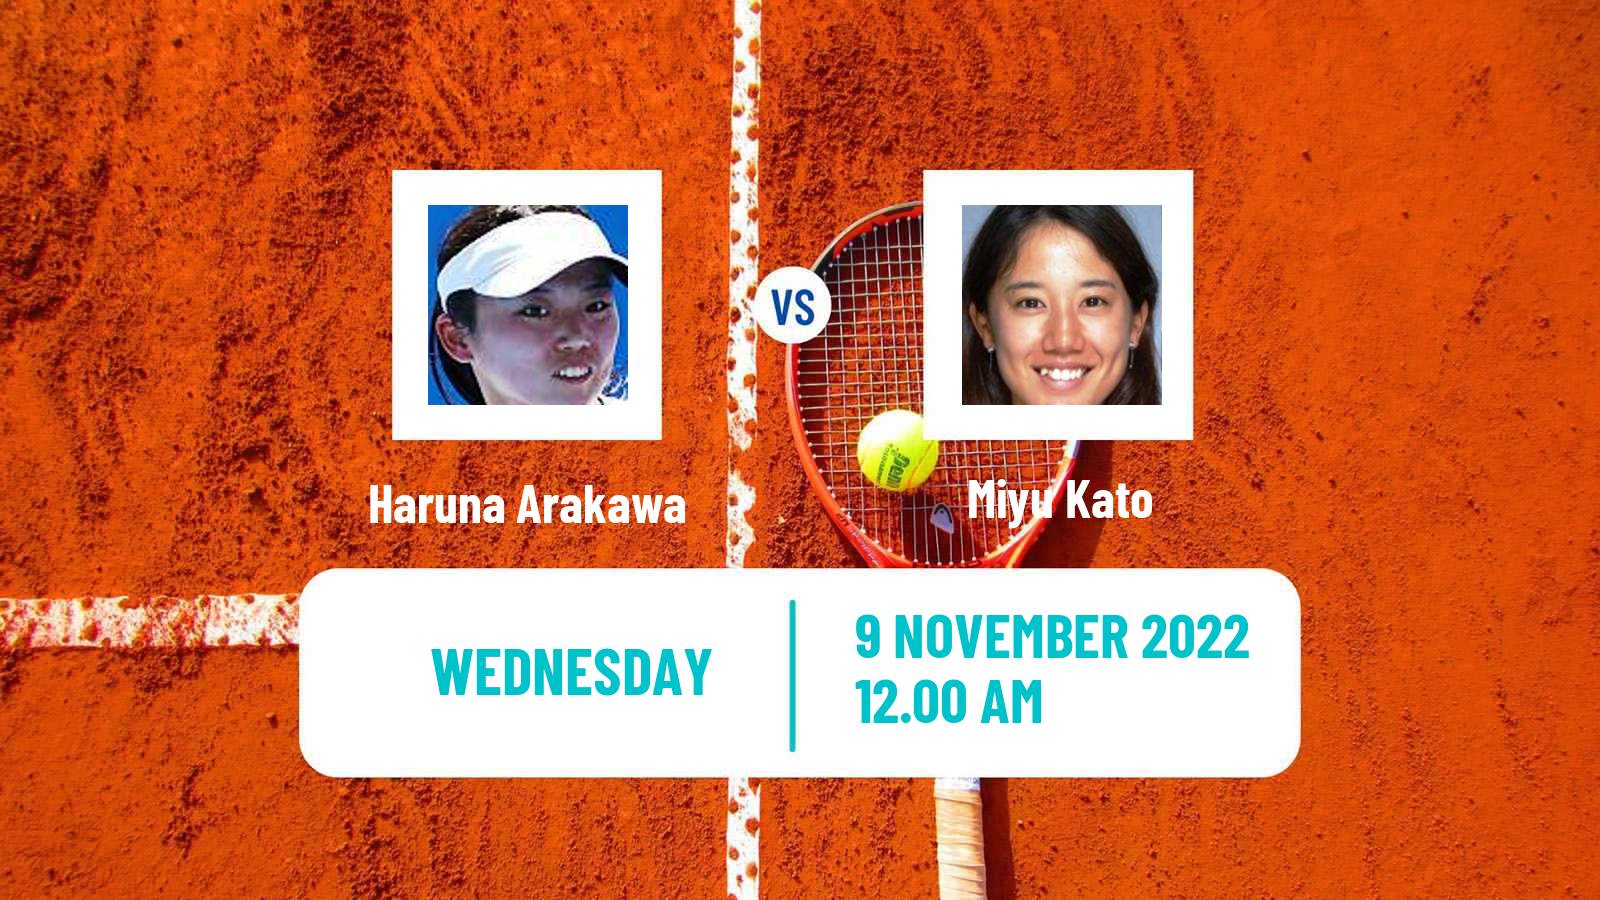 Tennis ITF Tournaments Haruna Arakawa - Miyu Kato